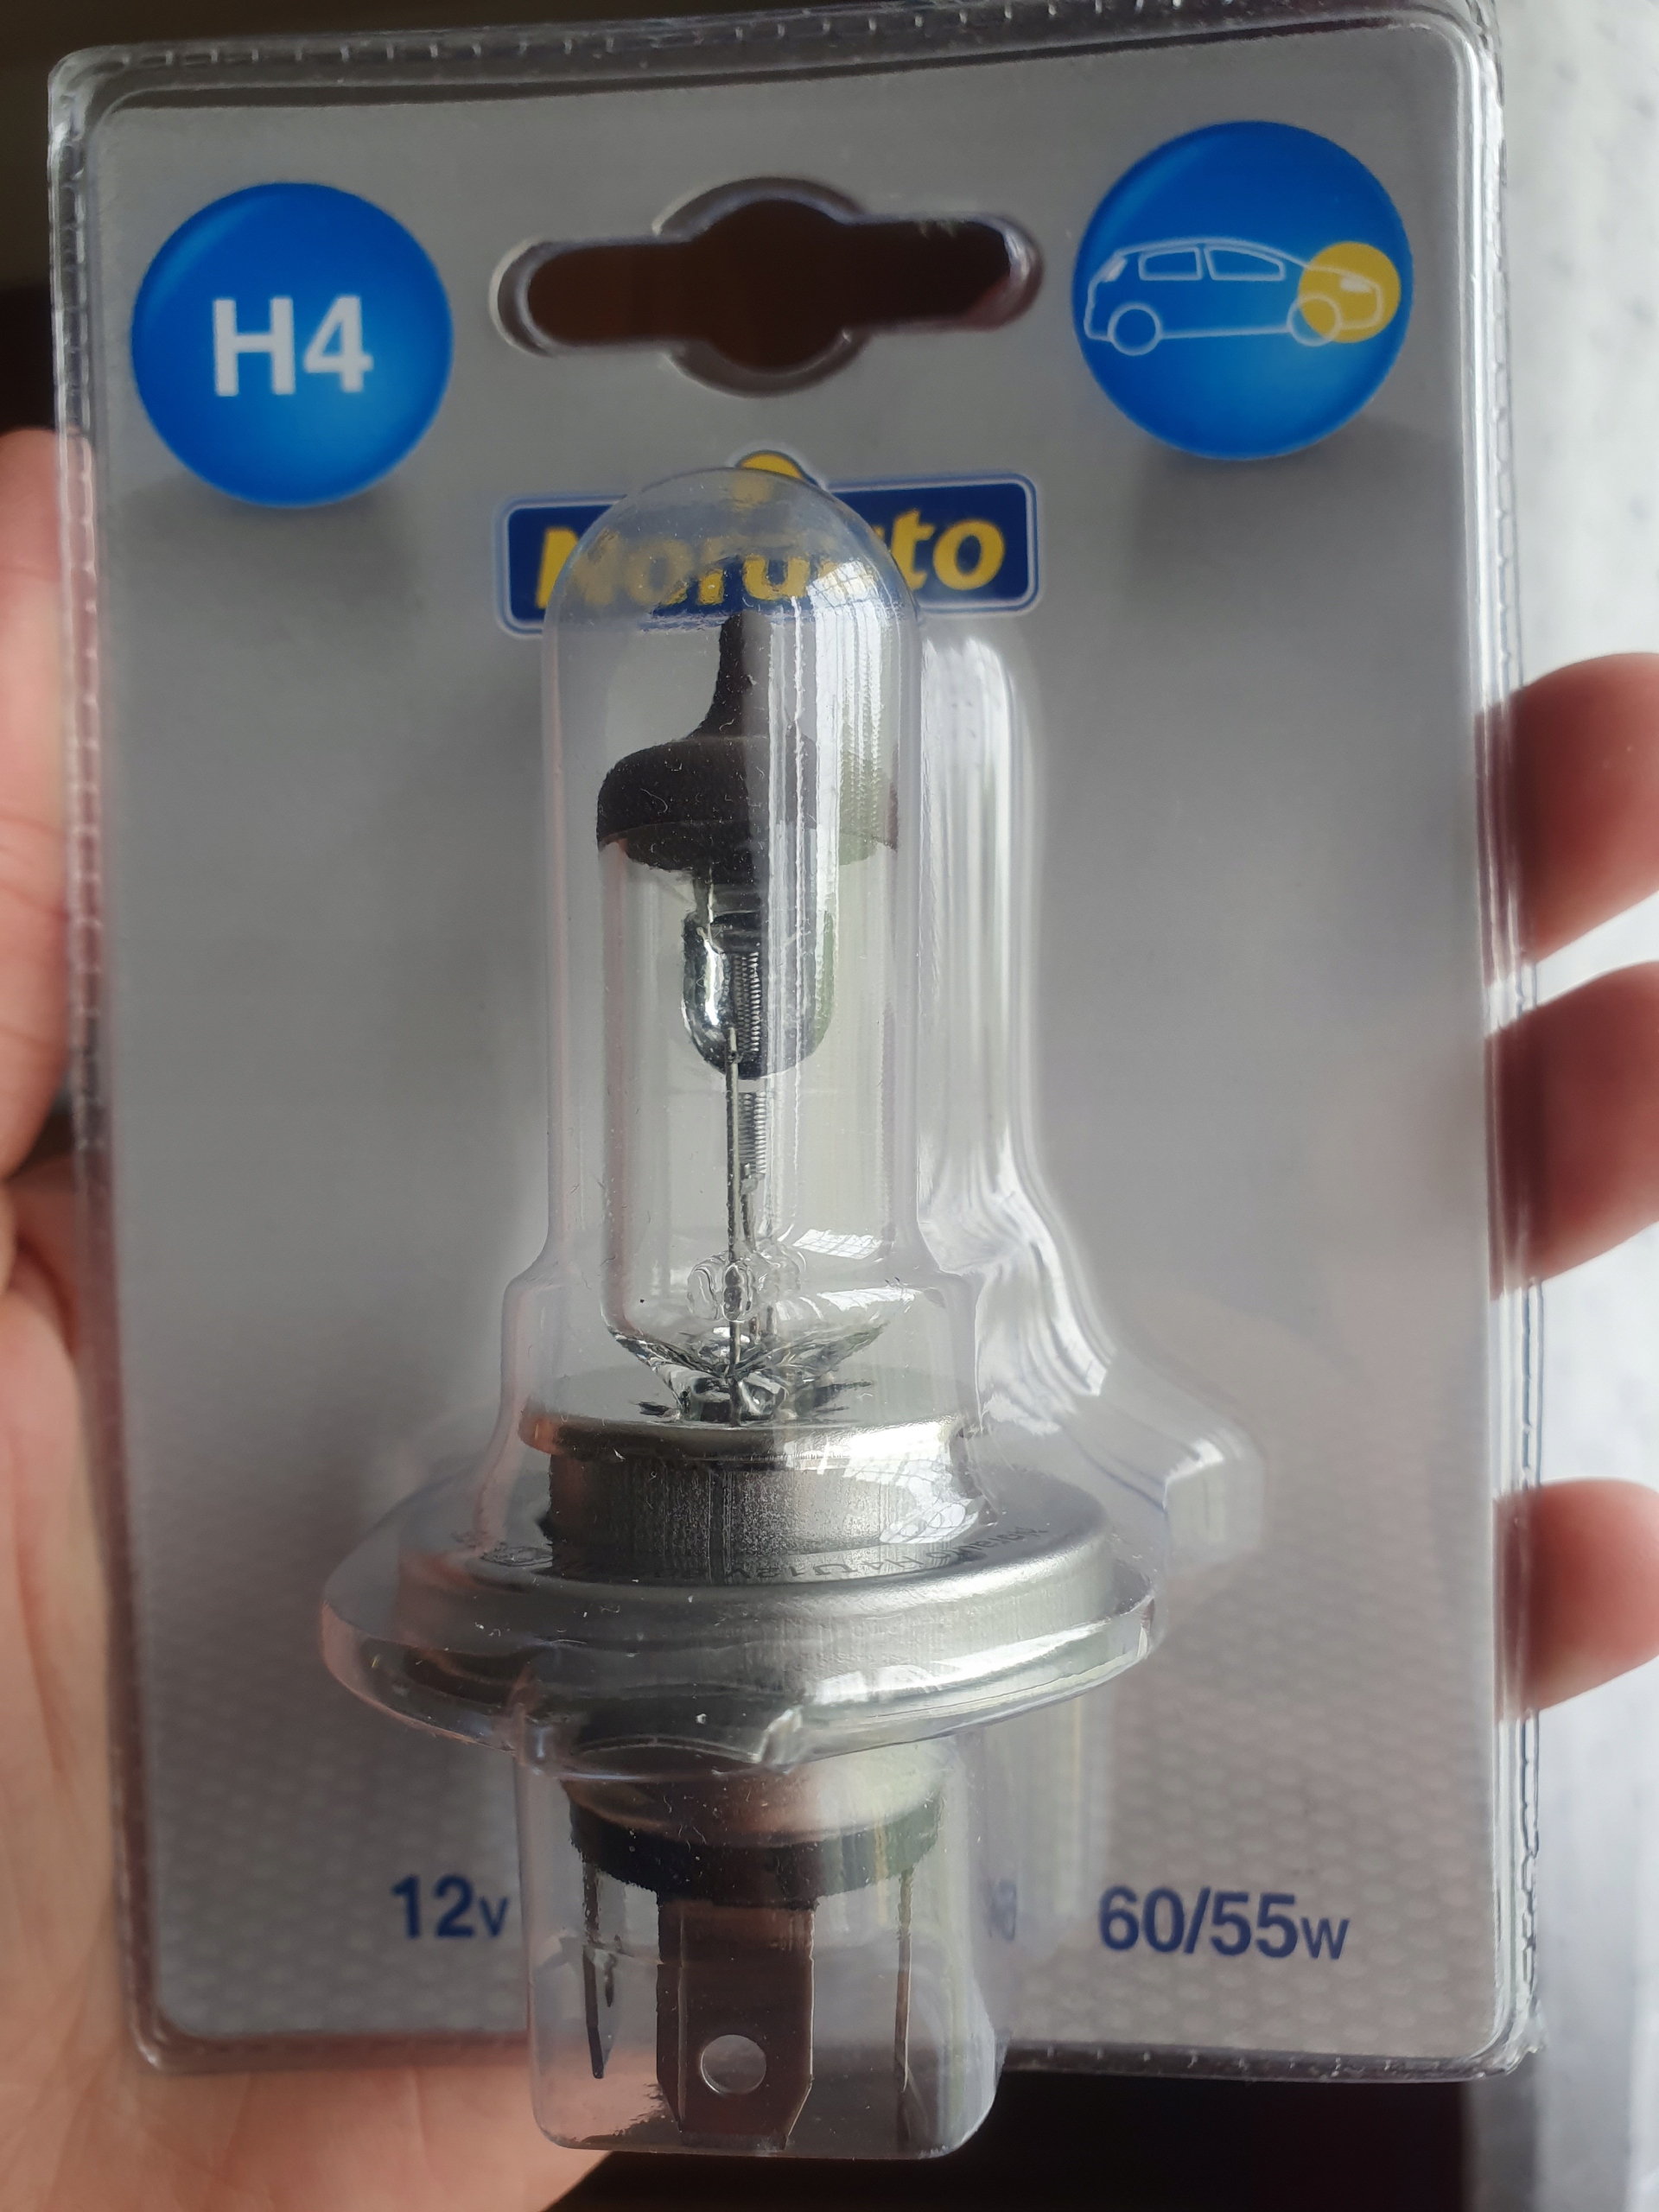 2 Ampoules H6W NORAUTO Classic - Norauto